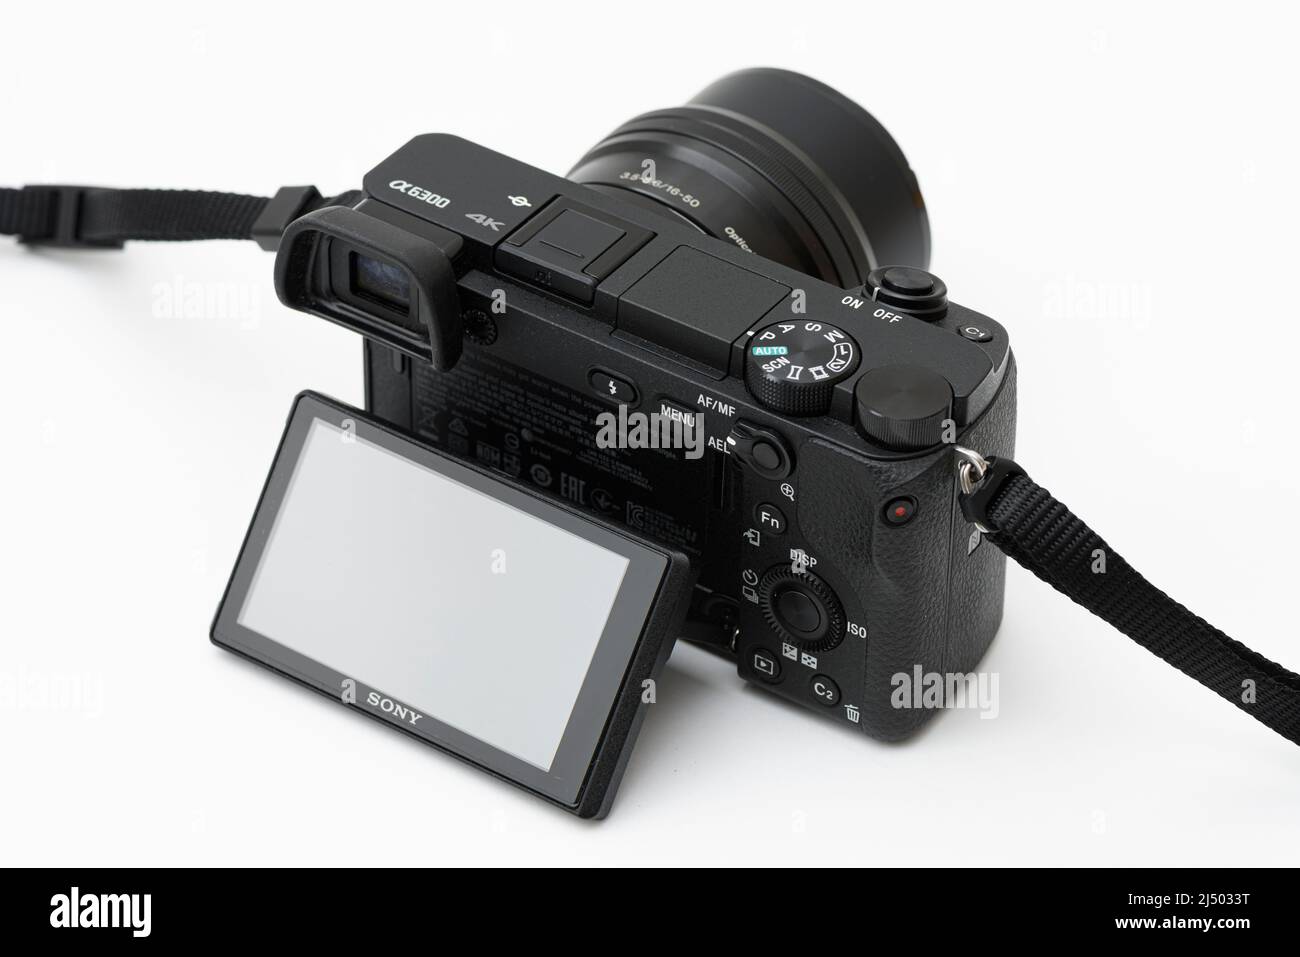 ISTANBUL, TÜRKEI – 15. APRIL 2022: Sony Alpha a6300 Digitalkamera mit spiegellosen Autofokus und 4K Aufnahmen mit 16-50mm-Objektiv. Stockfoto